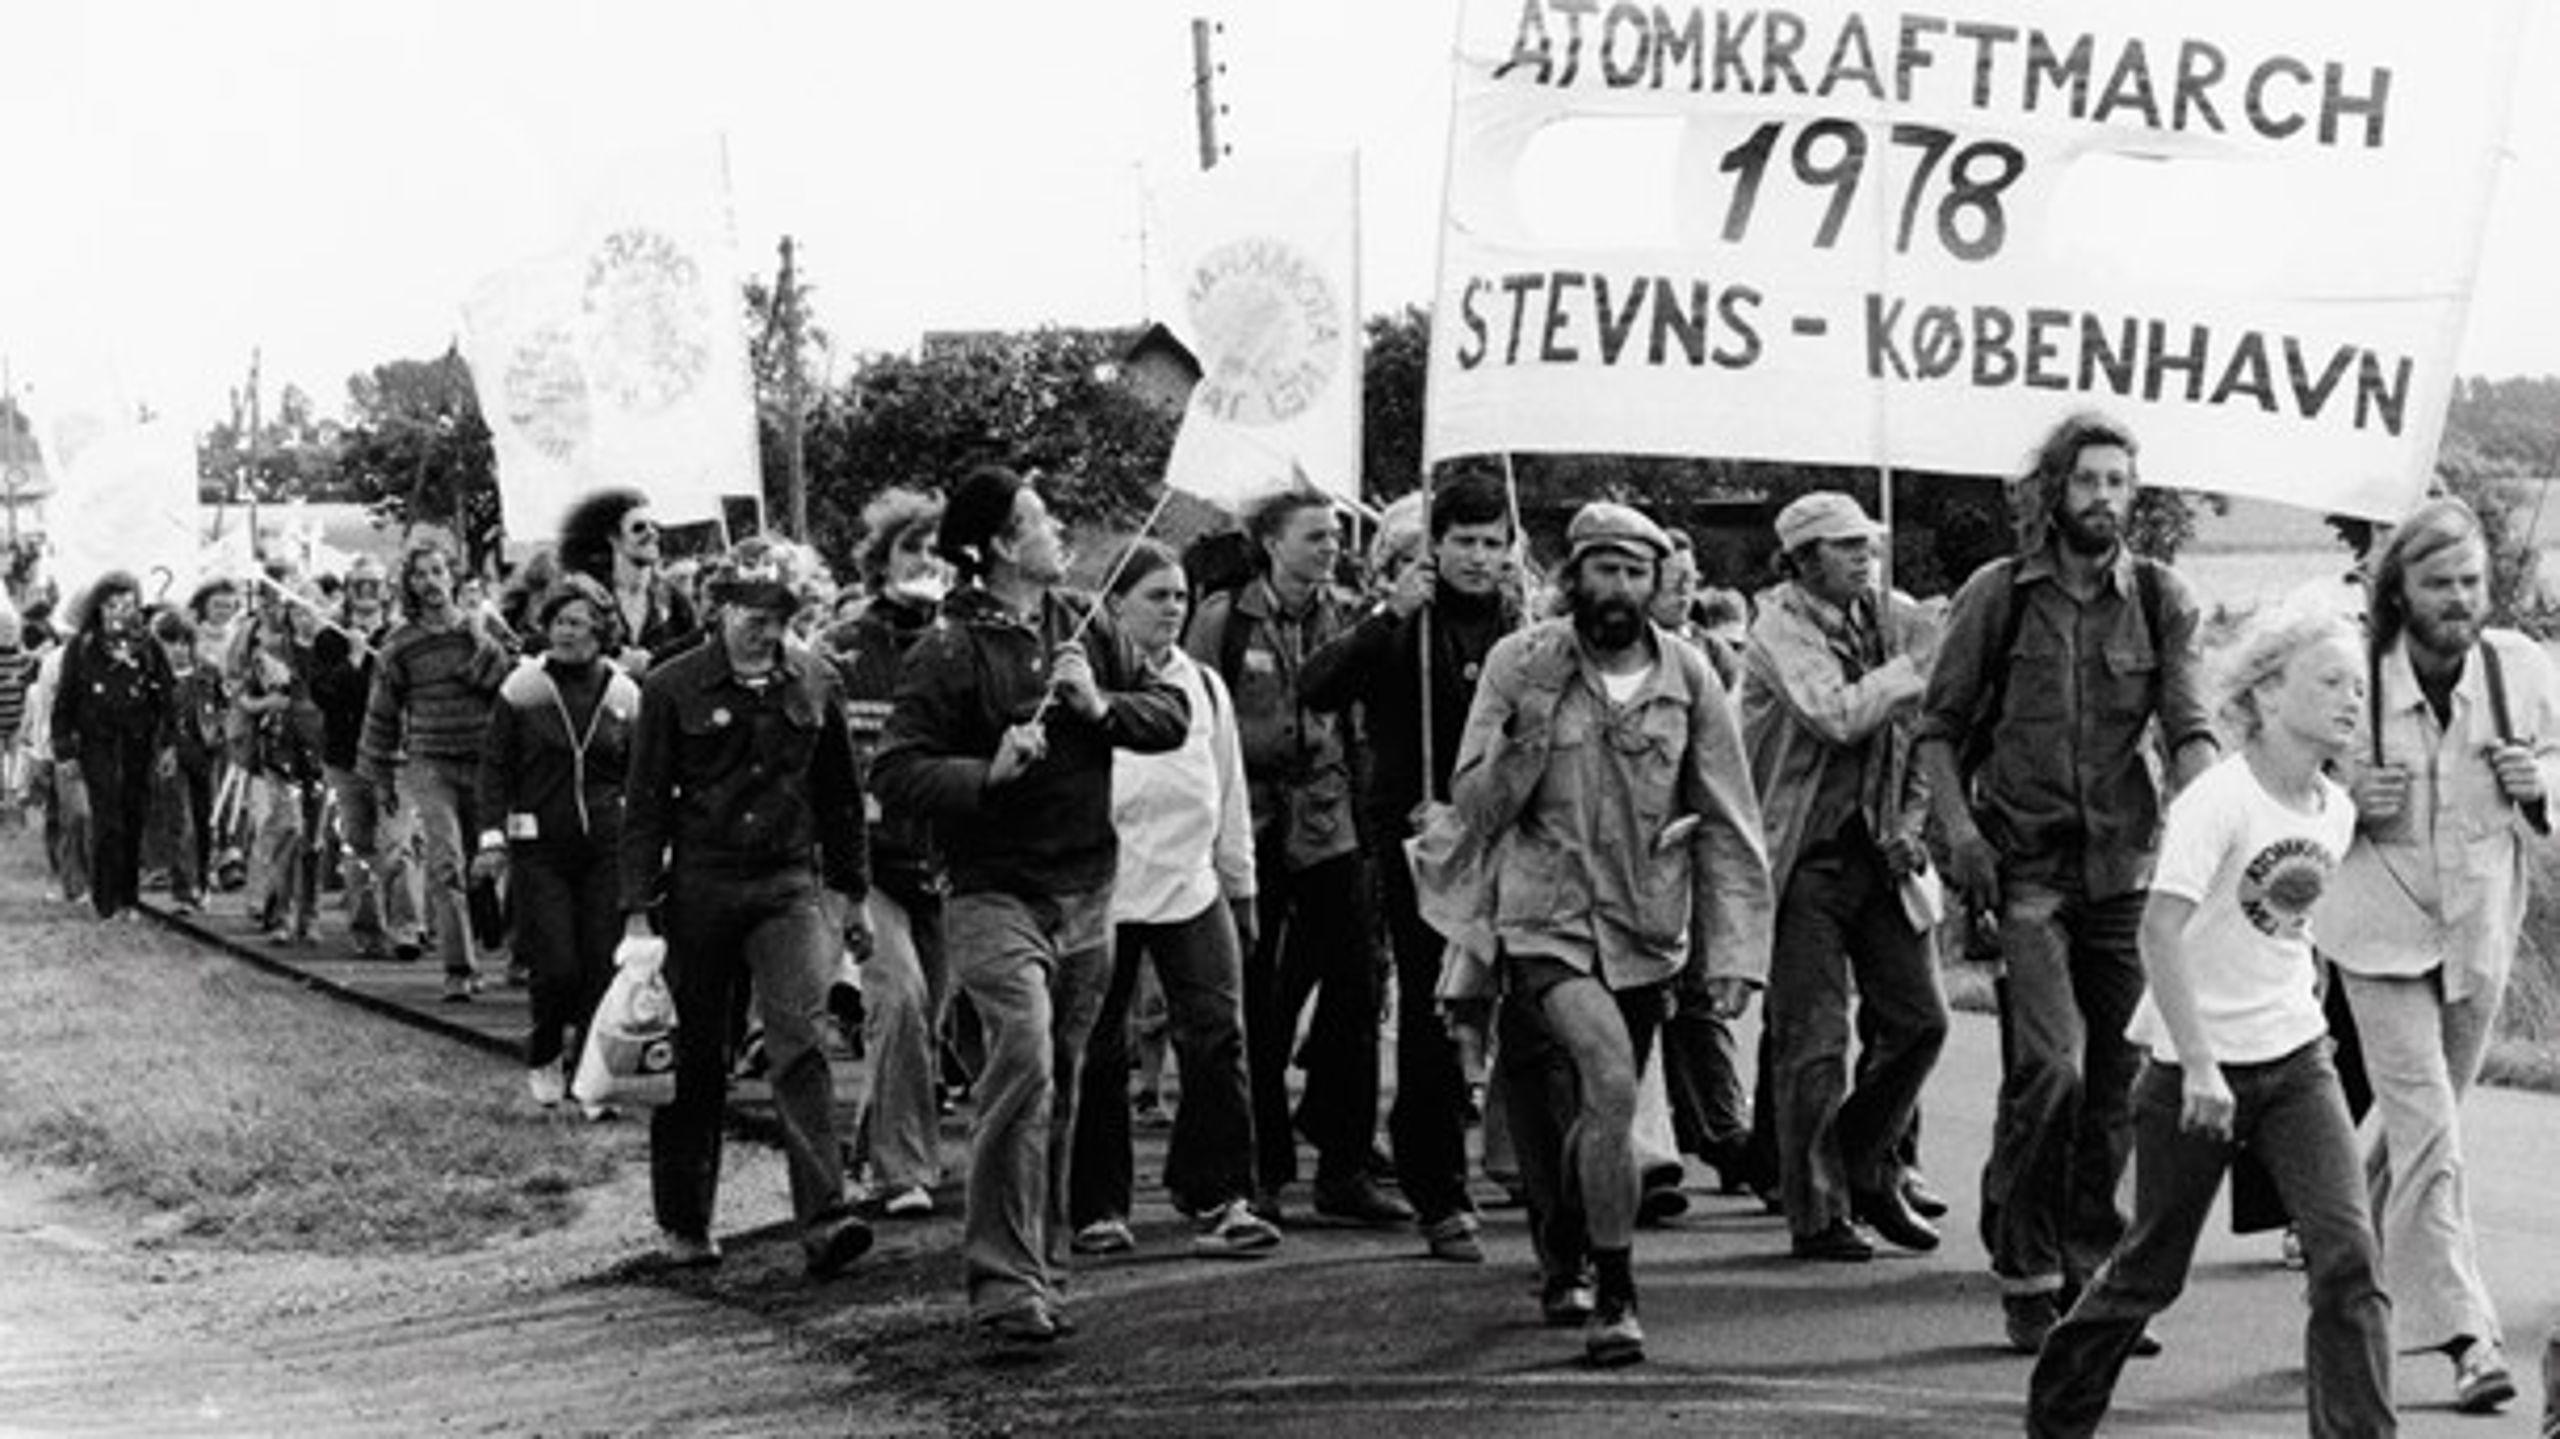 Atomkraft har tidligere fået danskerne på gaden. Her i en protestmarch fra Stevns til Christiansborg Slotsplads i 1978.